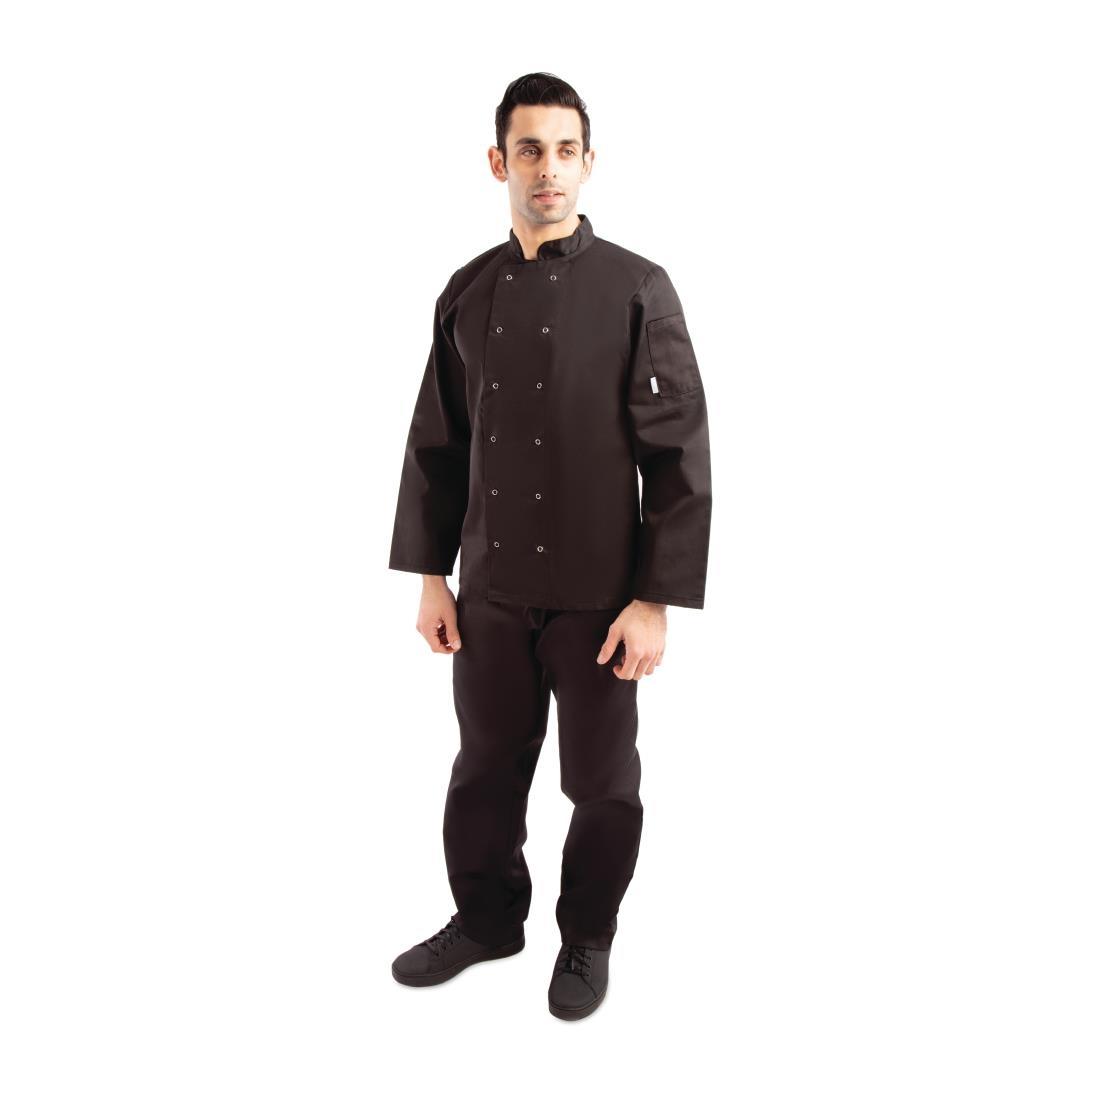 Whites Vegas Unisex Chefs Jacket Long Sleeve Black XL - A438-XL  - 7